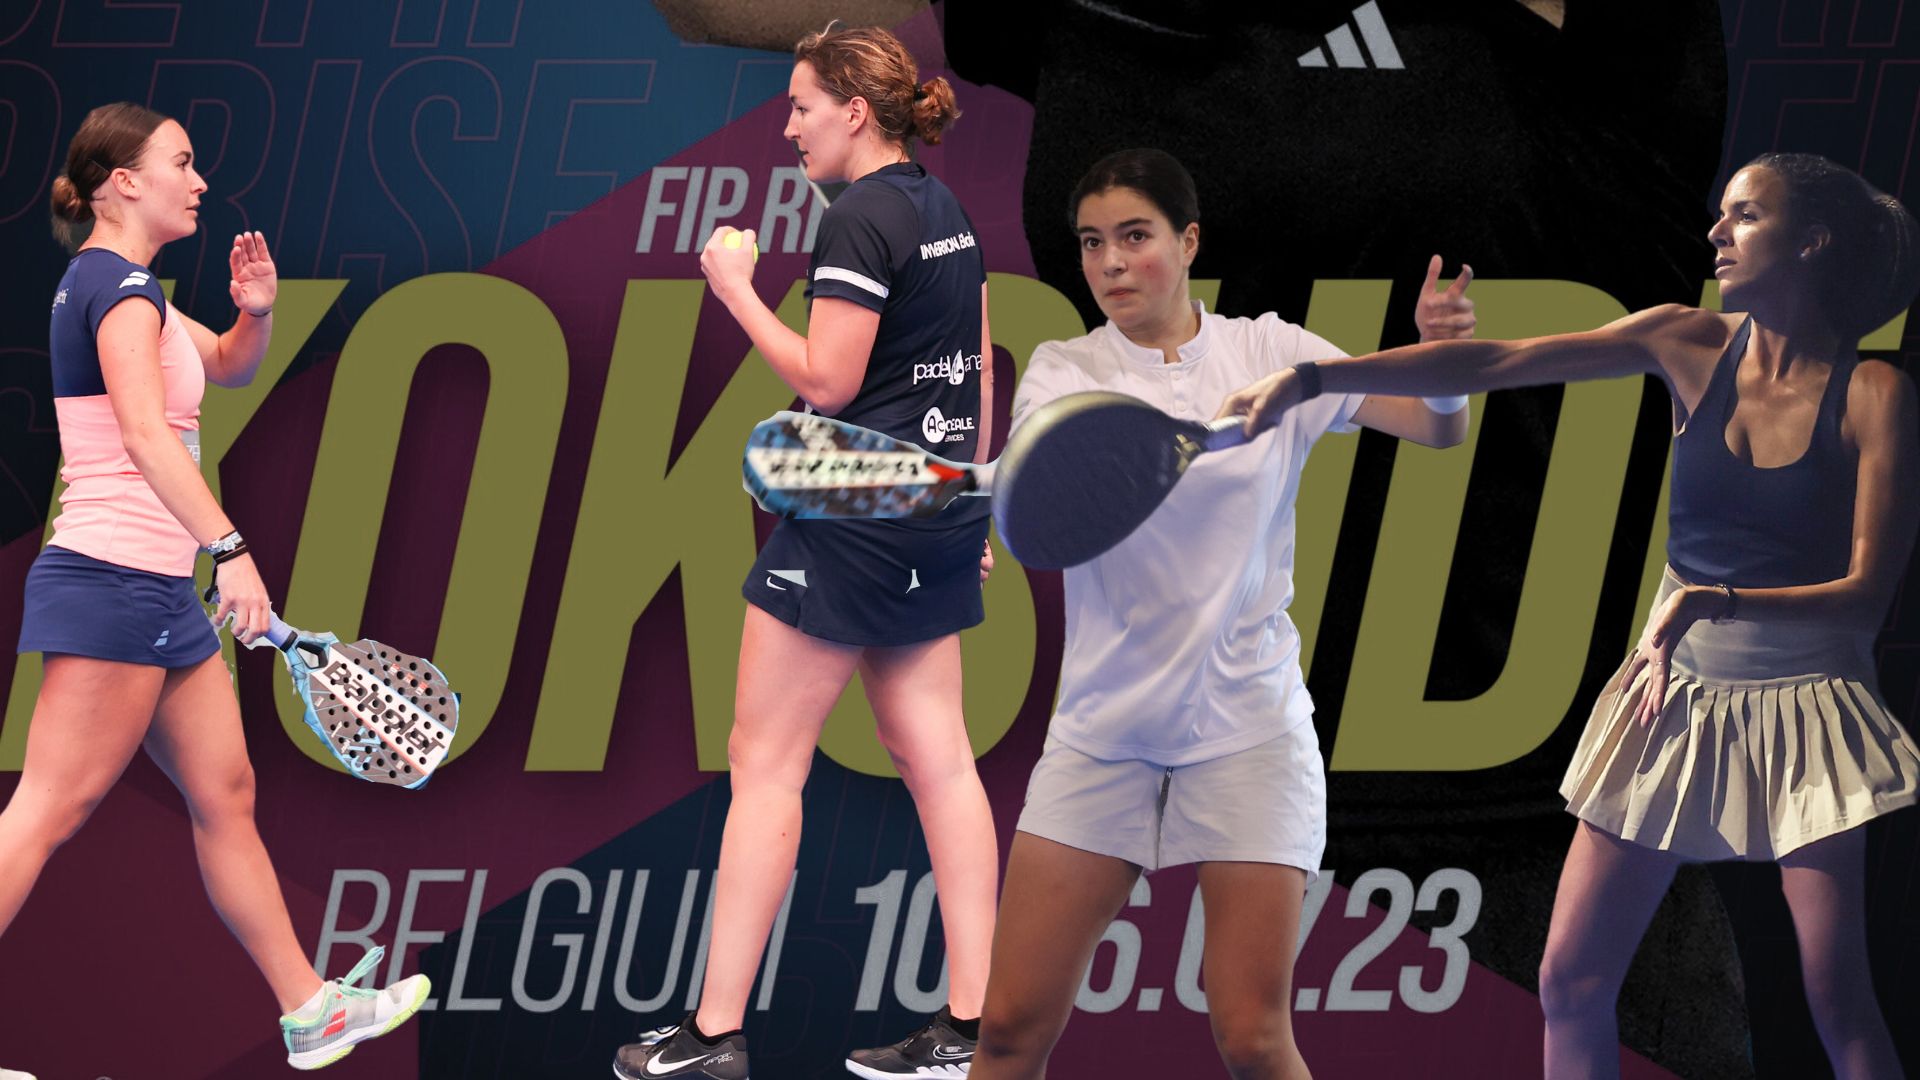 FIP Rise Koksijde – 7人のフランス人女性がベルギーを制覇